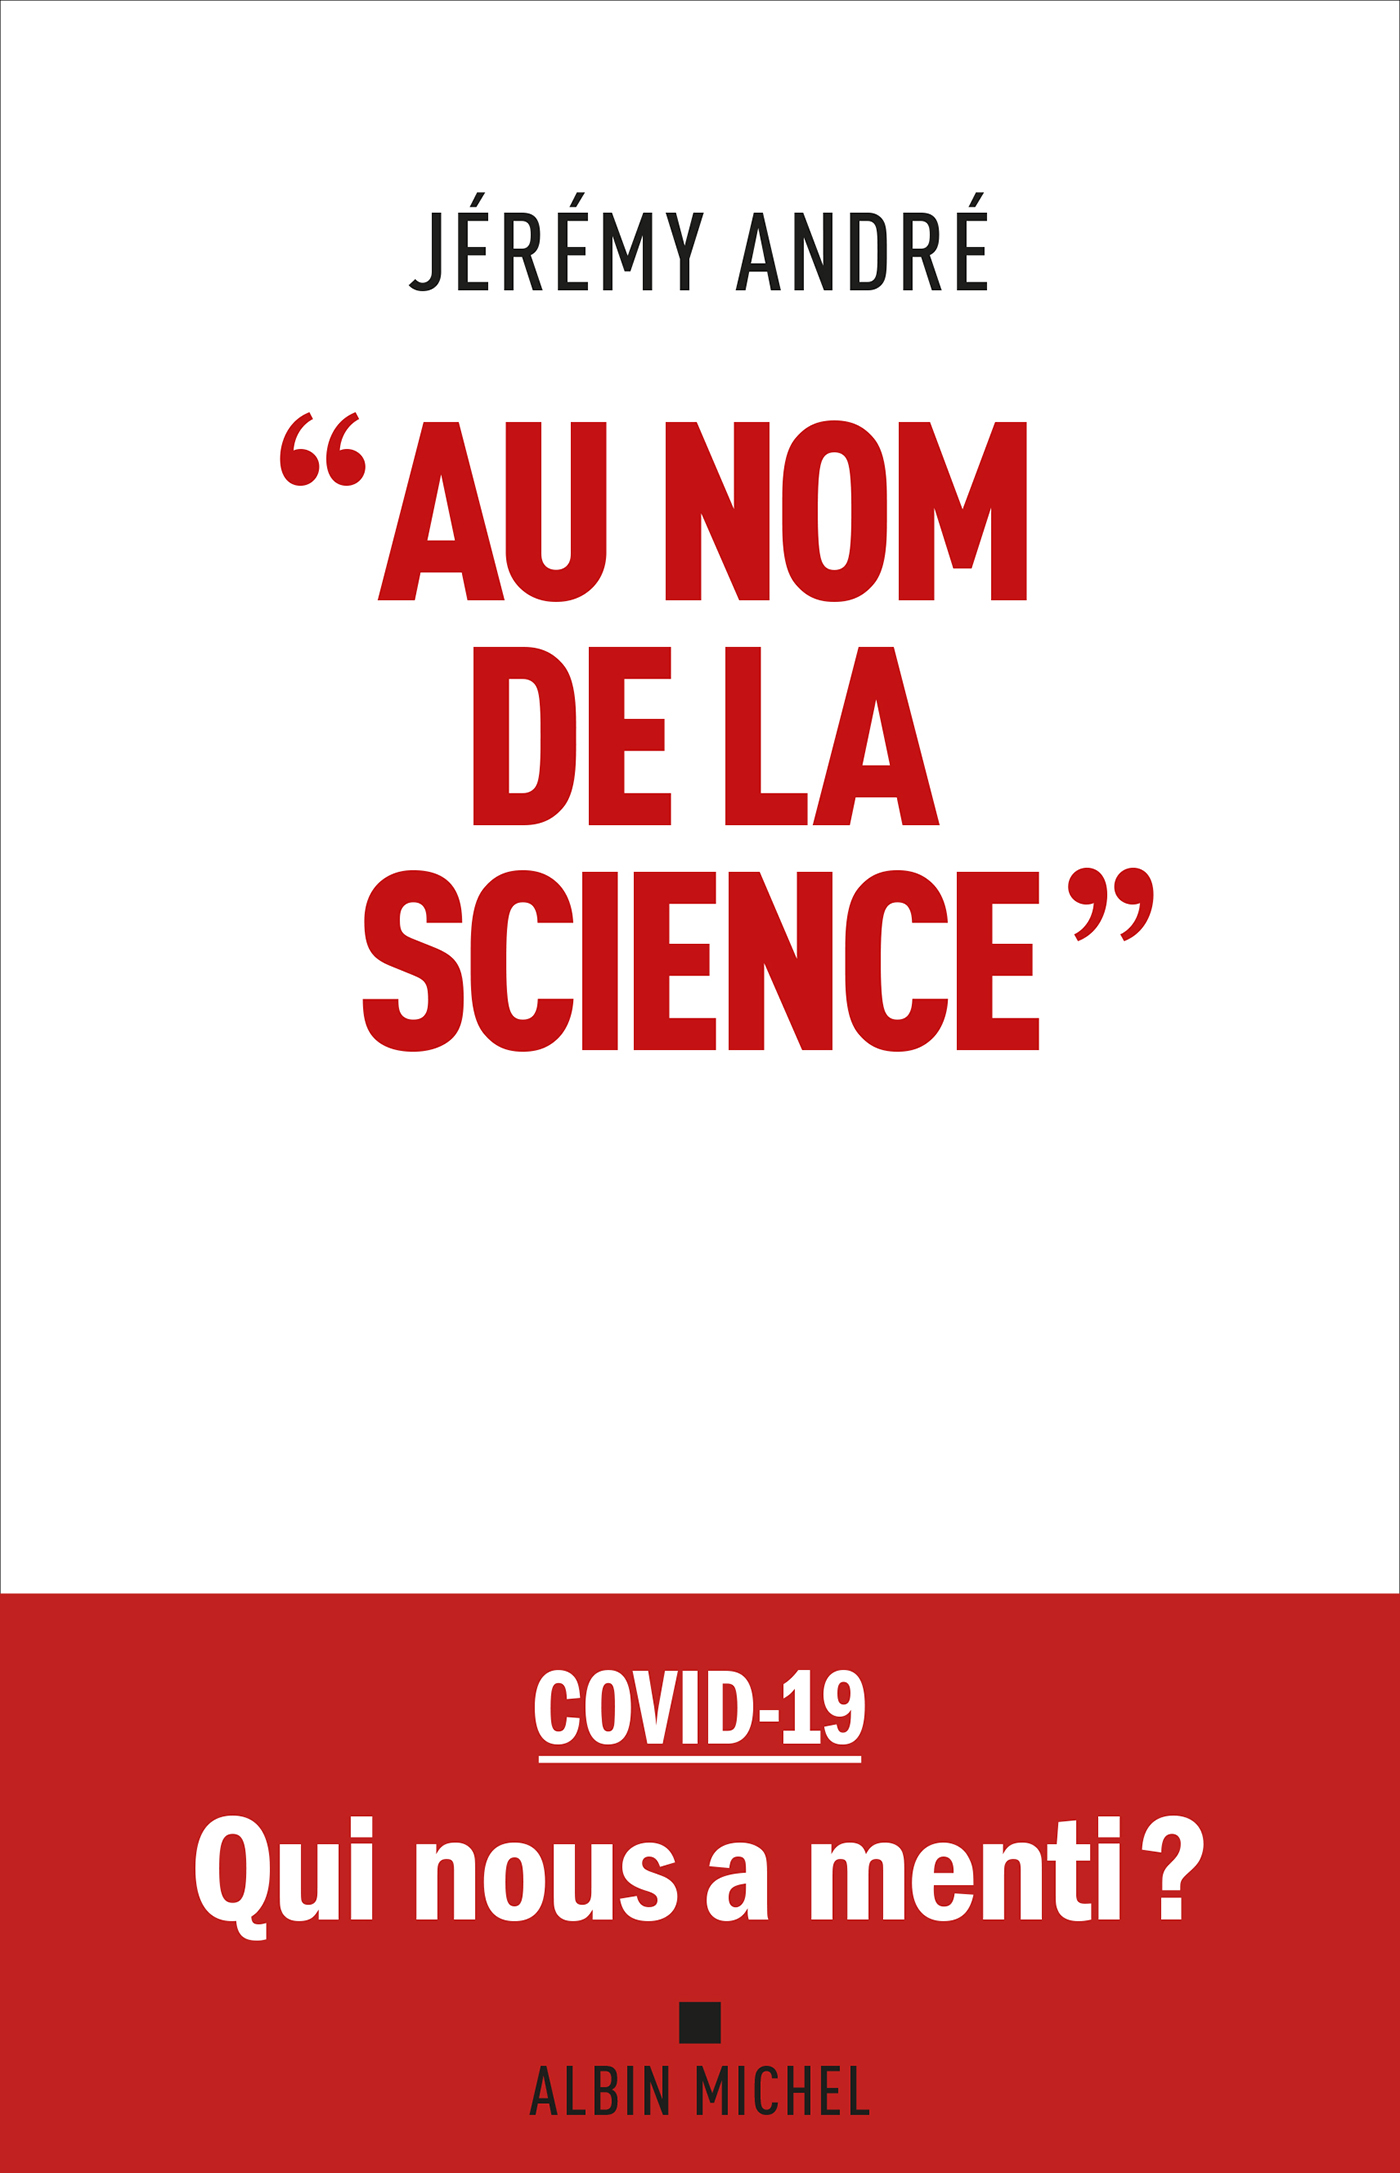 Couverture du livre "Au nom de la science"